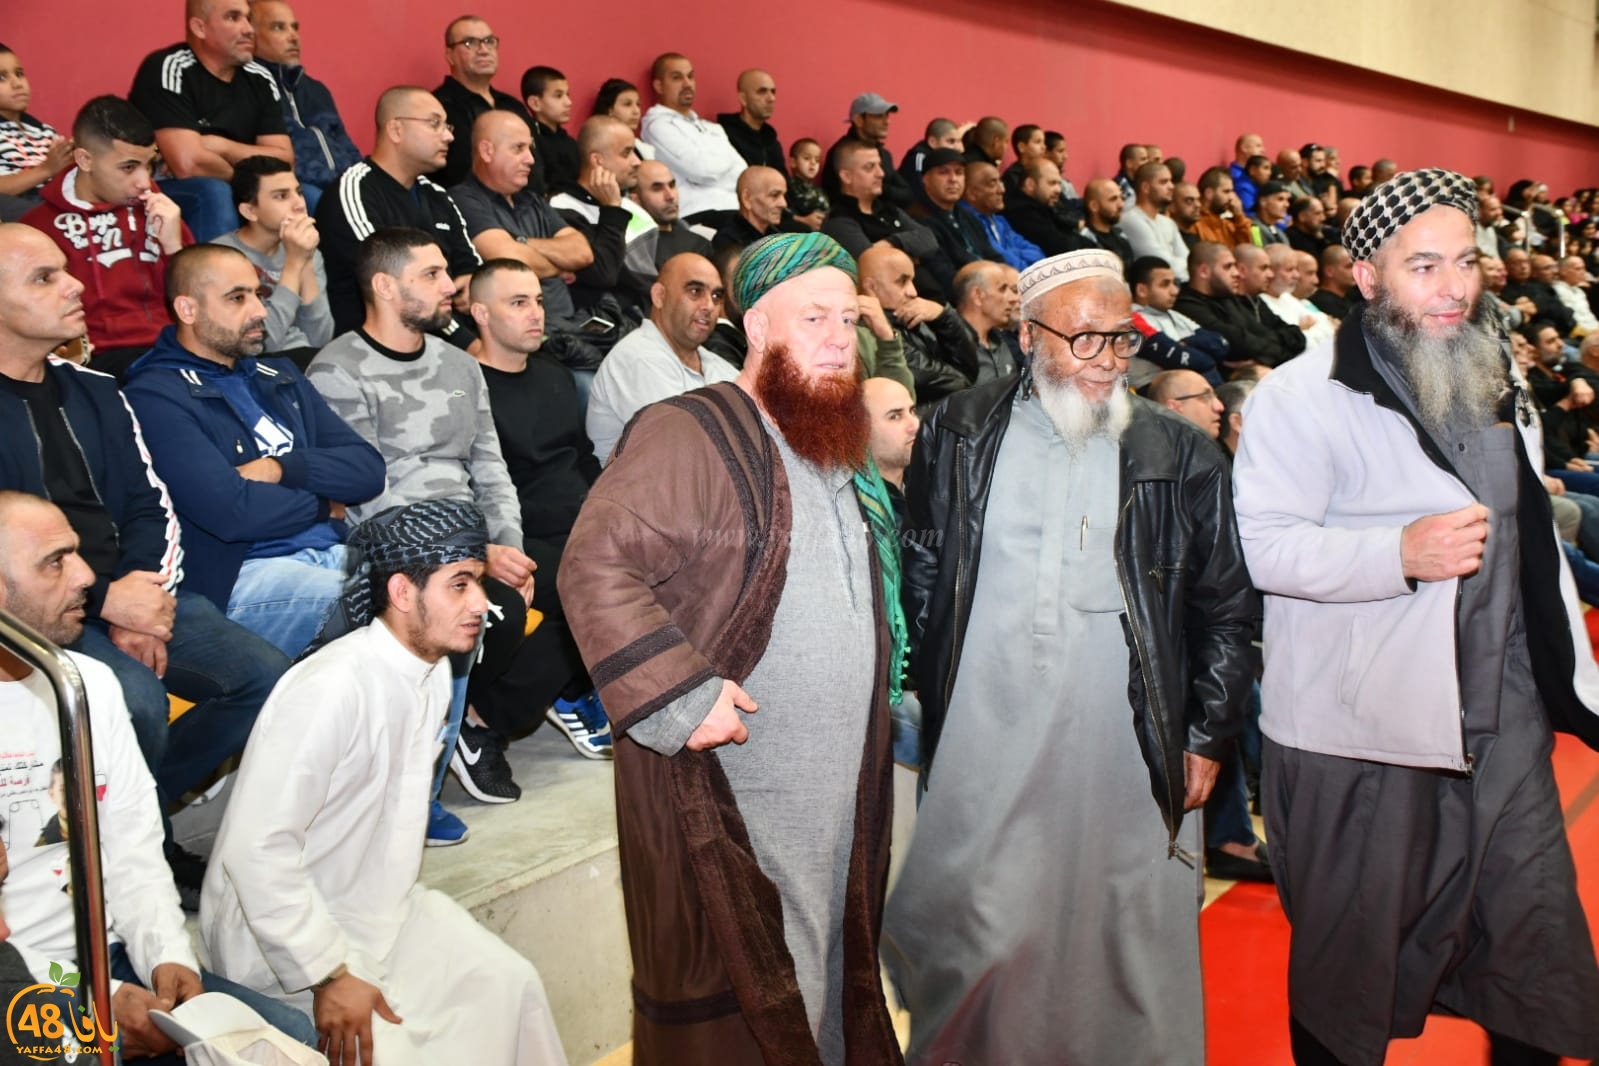 بعد النجاح الكبير في قضيتهم - حضور غفير في احتفال الصيادين بمدينة يافا 